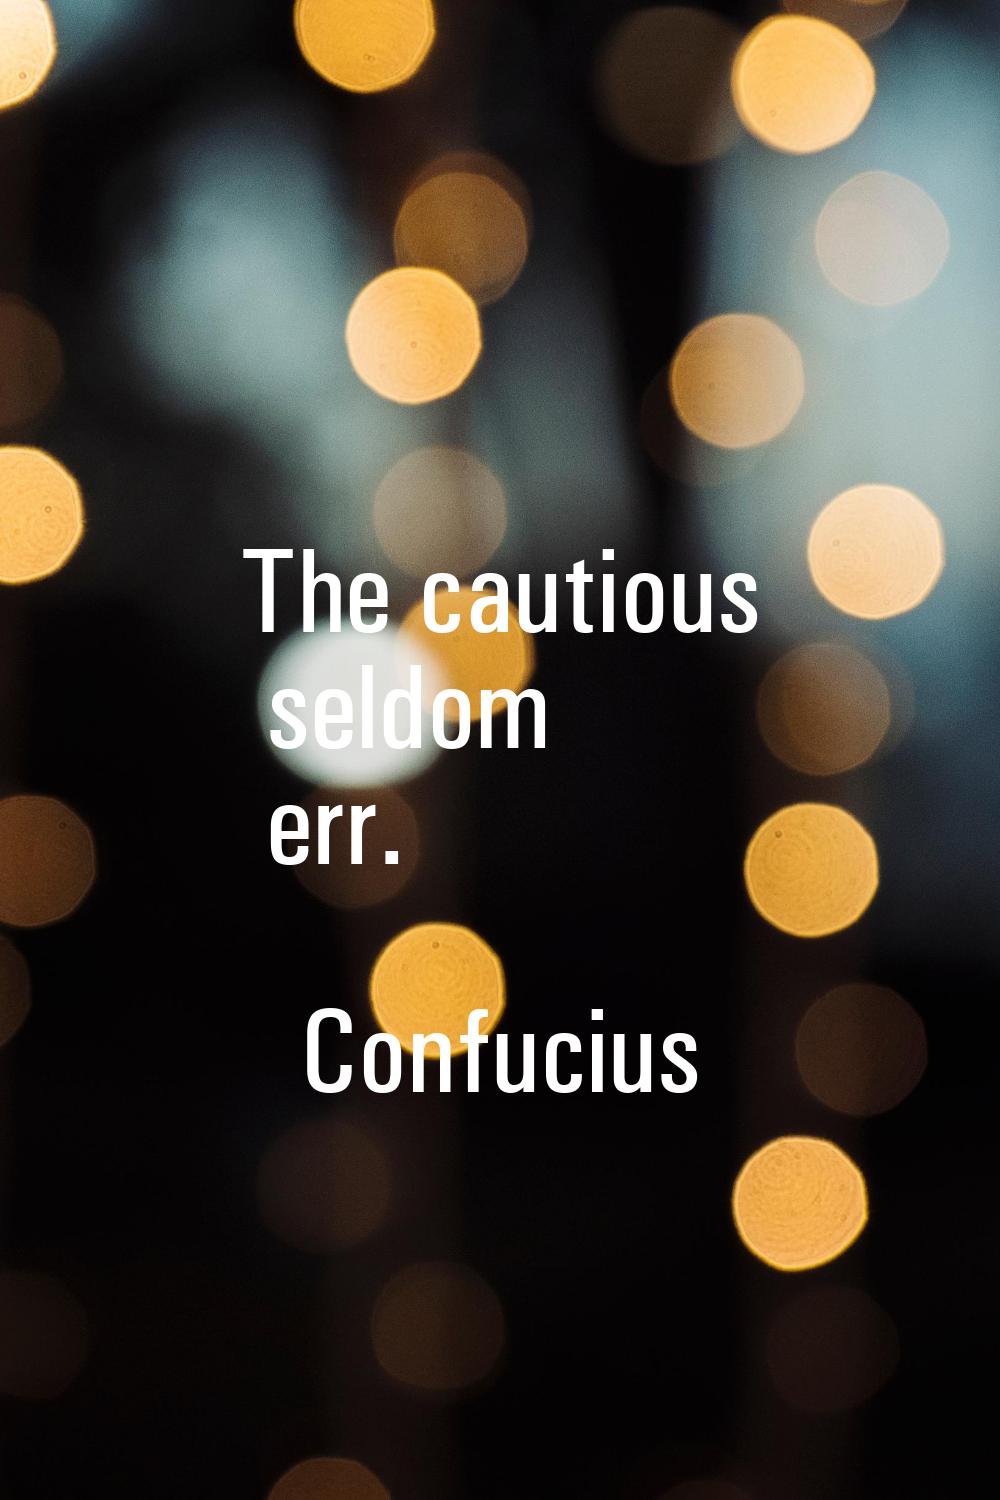 The cautious seldom err.